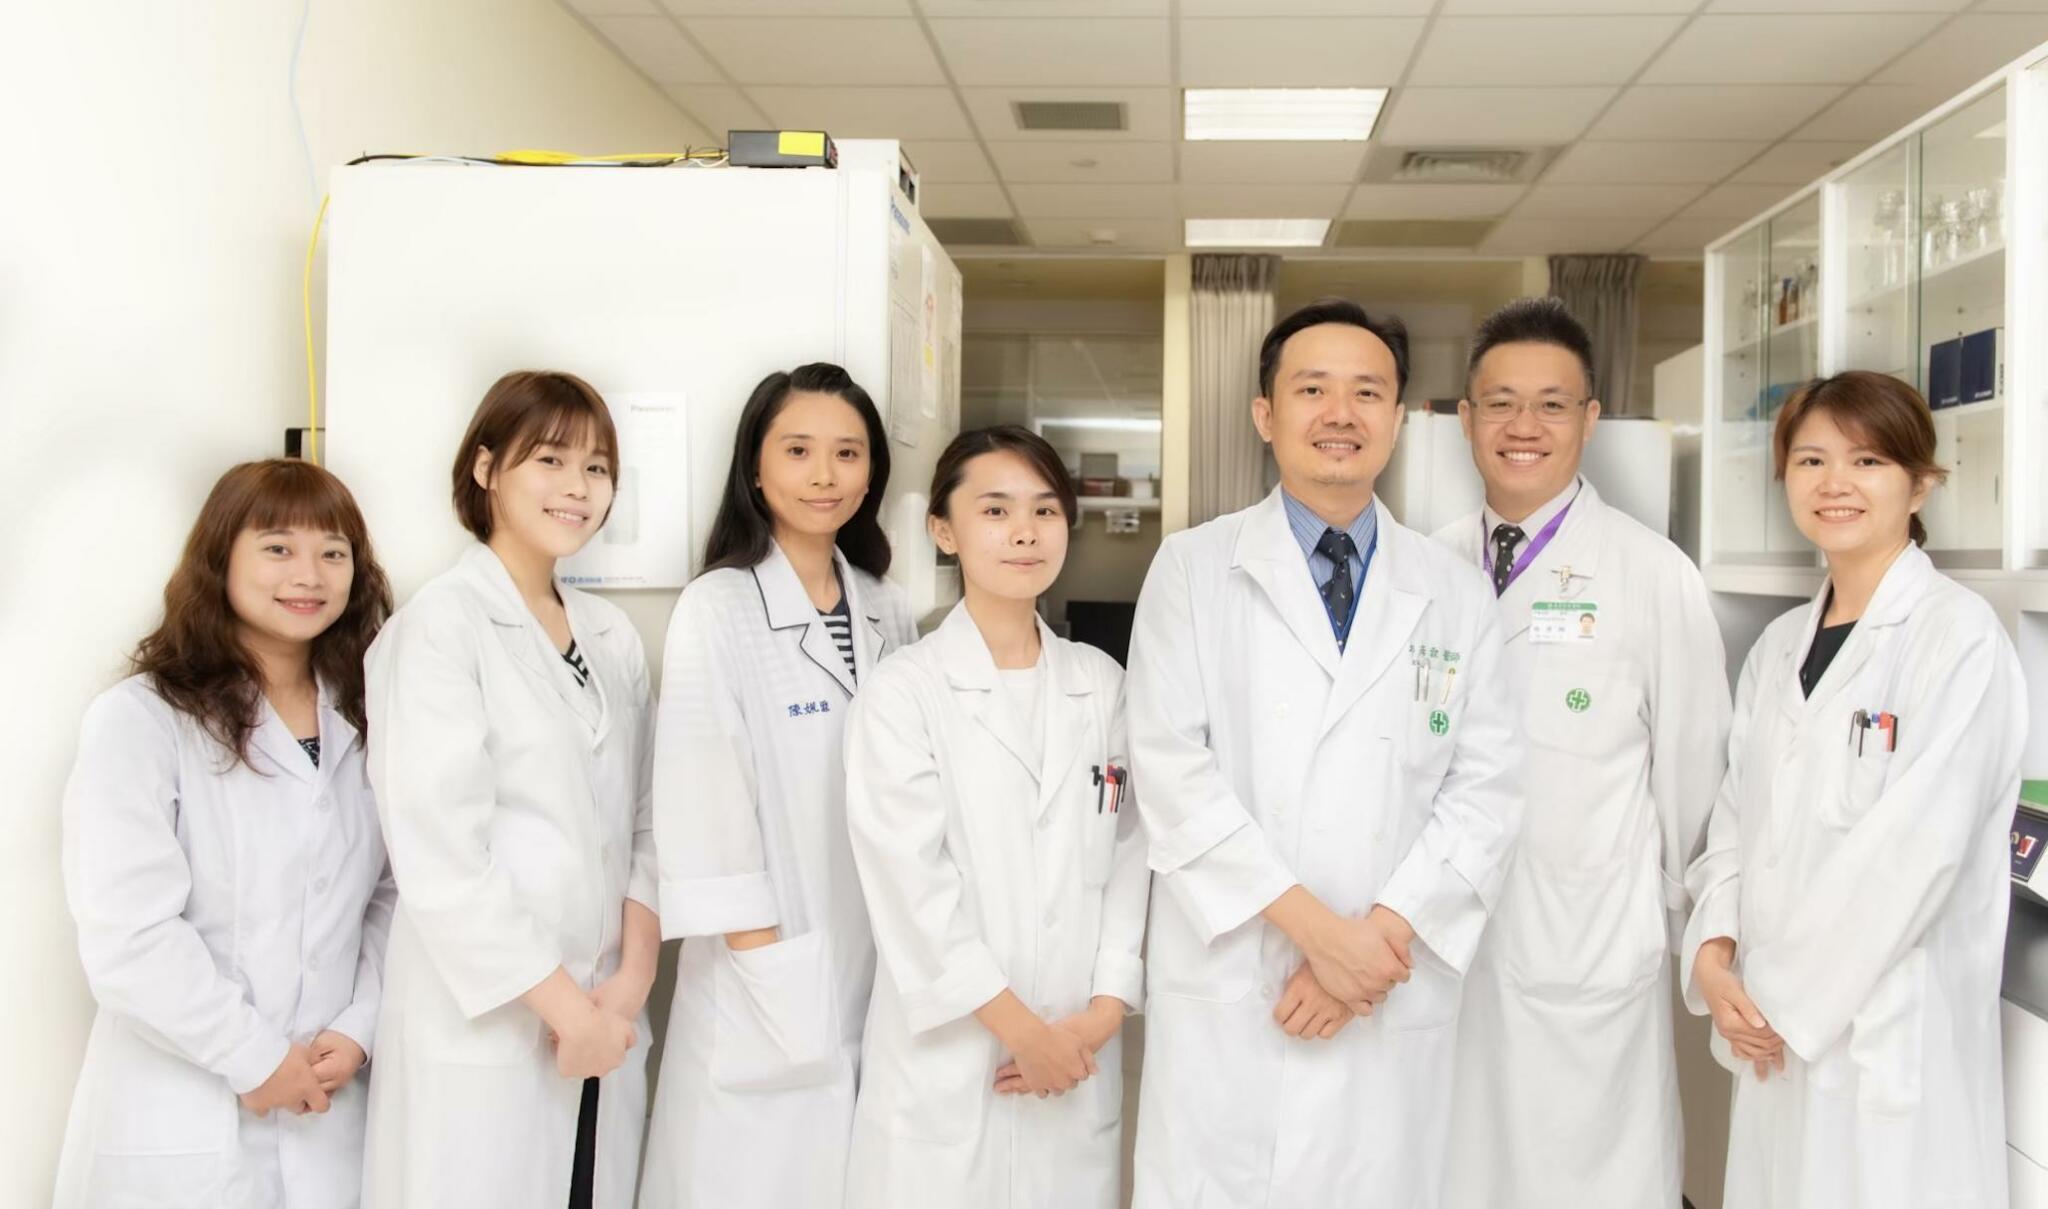 台灣研究找到免疫調節機制新方向  鎖定開發免疫治療標的藥物